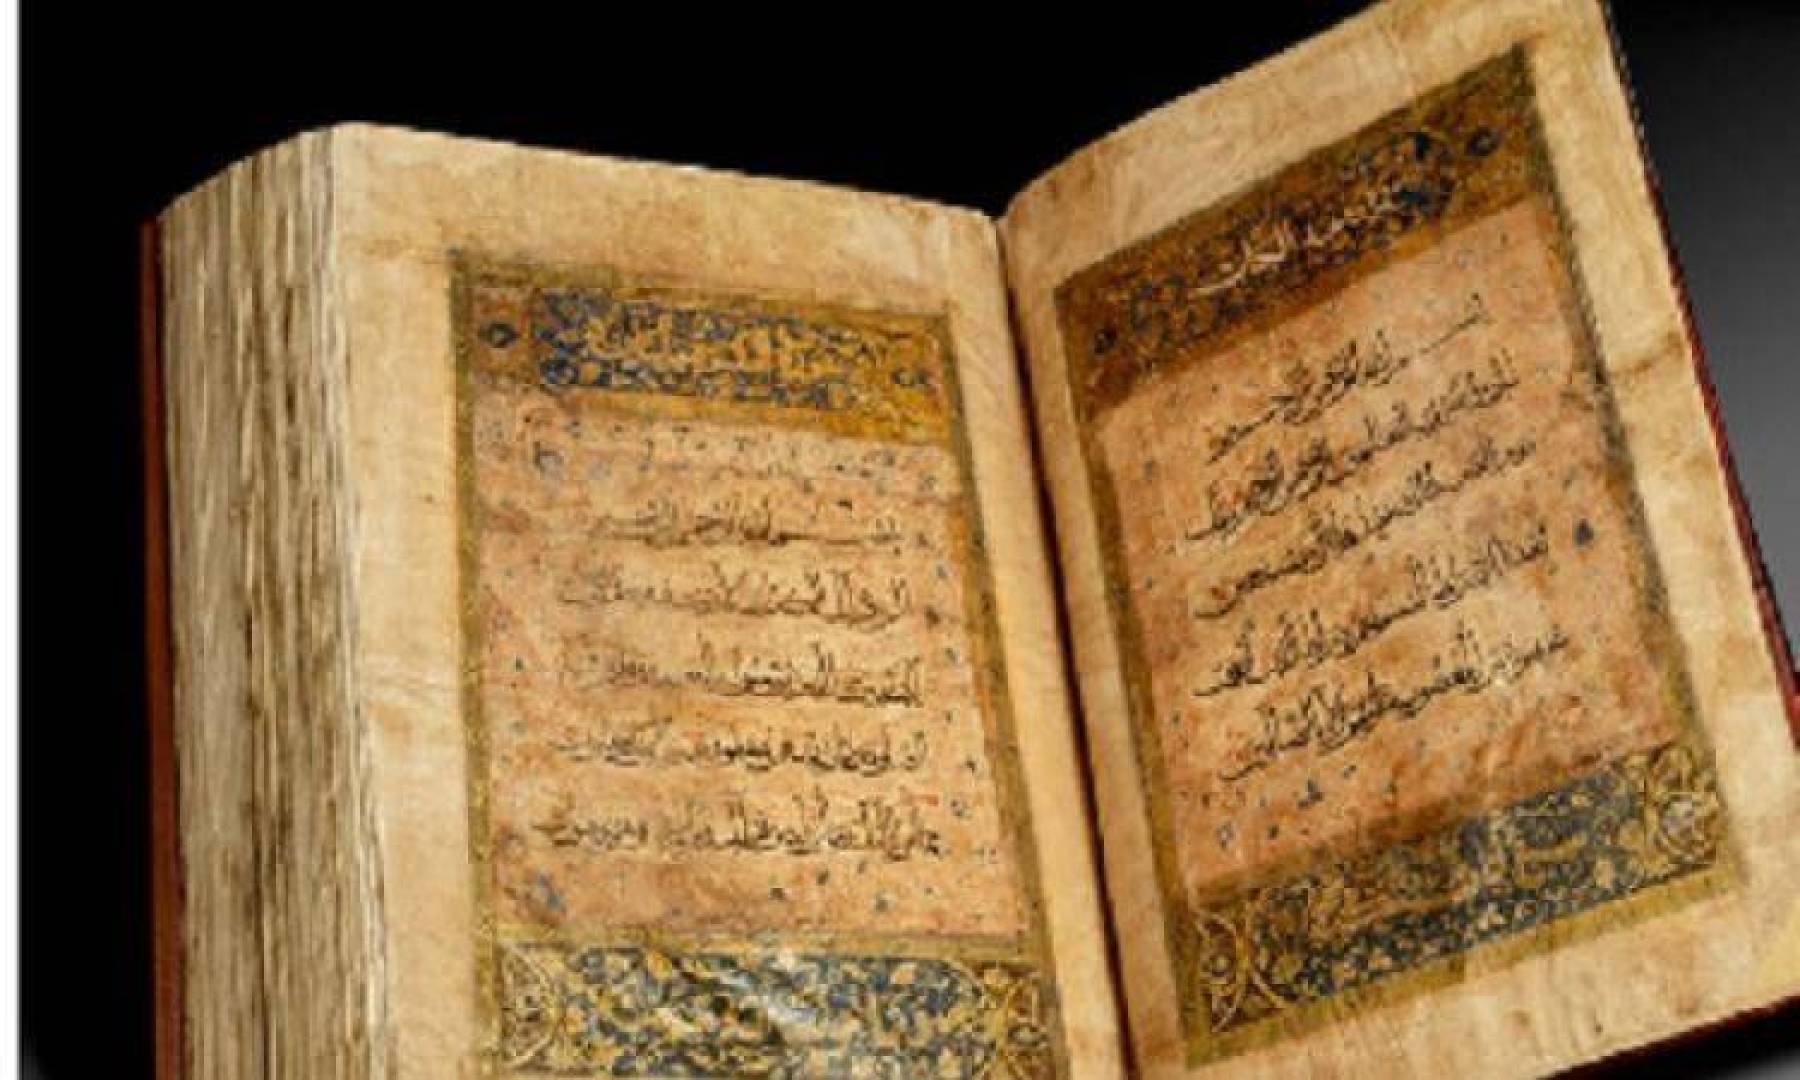 مصحف مملوكي يعود إلى القرن الرابع عشر يعرض للبيع في مزاد الفنون الإسلامية